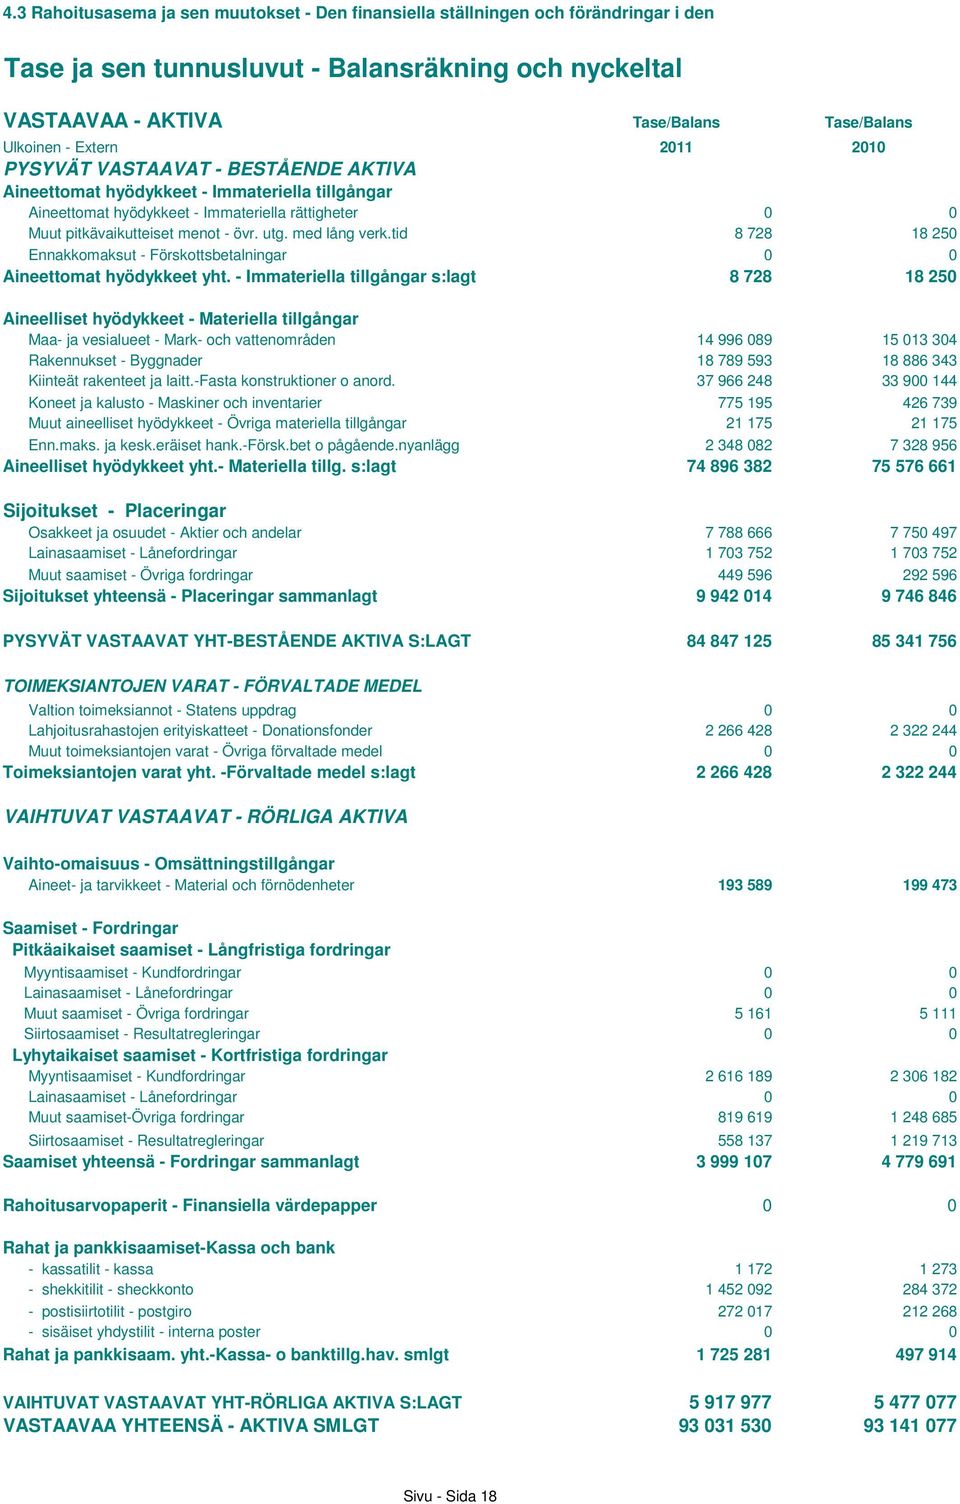 med lång verk.tid 8 728 18 250 Ennakkomaksut - Förskottsbetalningar 0 0 Aineettomat hyödykkeet yht.